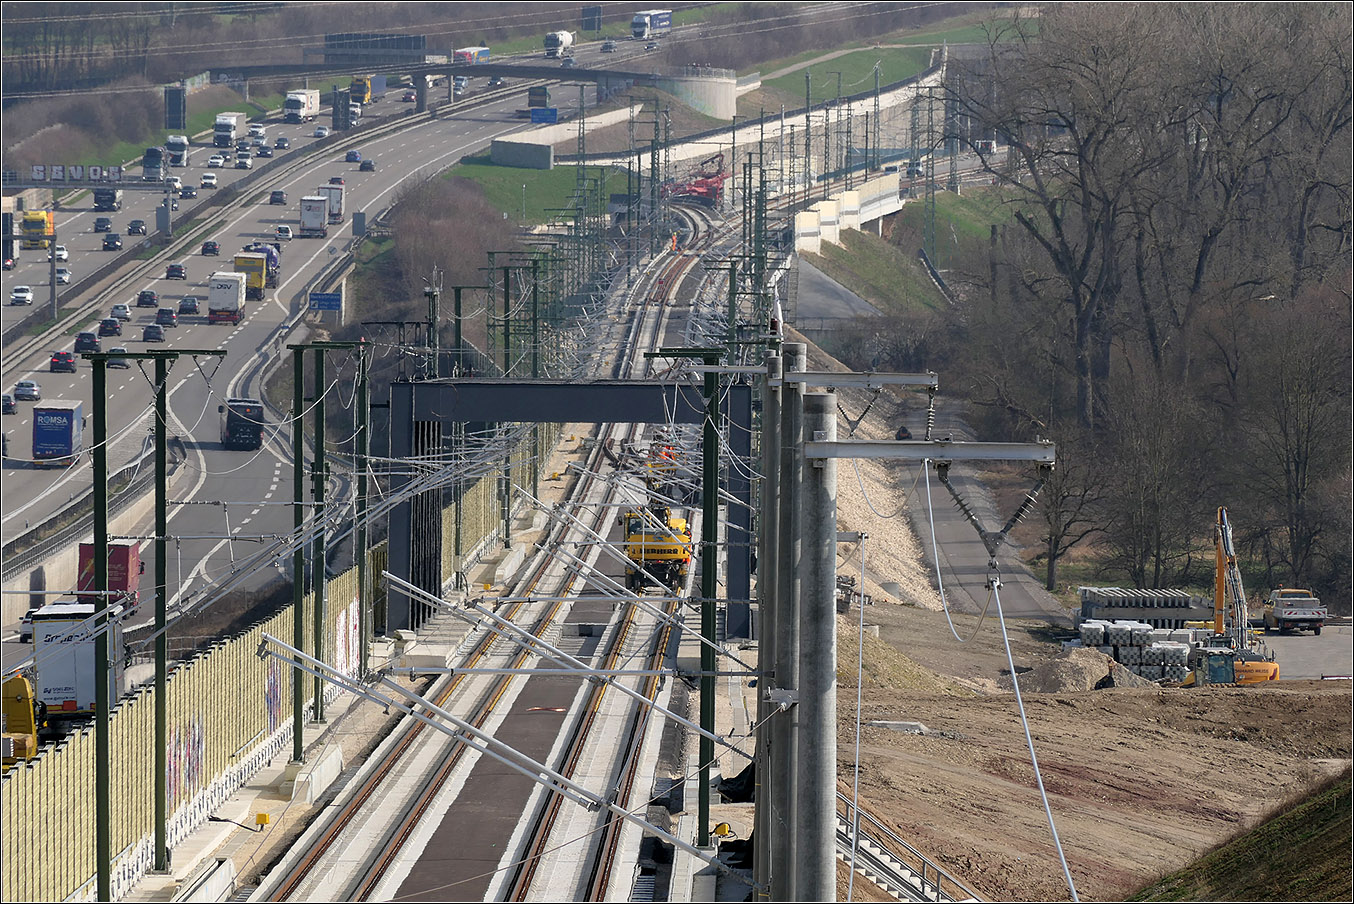 An der Autobahn entlang - 

Die noch nicht ganz fertige Schnellfahrstrecke zwischen Stuttgart und Ulm bei Köngen. Blick von einer Feldwegbrücke auf die Neckartalquerung. Das abzweigende Gleis im Hintergrund gehört zur Großen Wendlinger Kurve, durch die die Verbindung zur Neckartalbahn zweigleisig wird und auch eine kreuzungsfreie Einführung in die Schnellfahrstrecke ermöglicht. An der Großen Wendlinger Kurve wird noch gebaut, sie soll erst ab 2027 zur Verfügung stehen.

29.02.2024 (M)